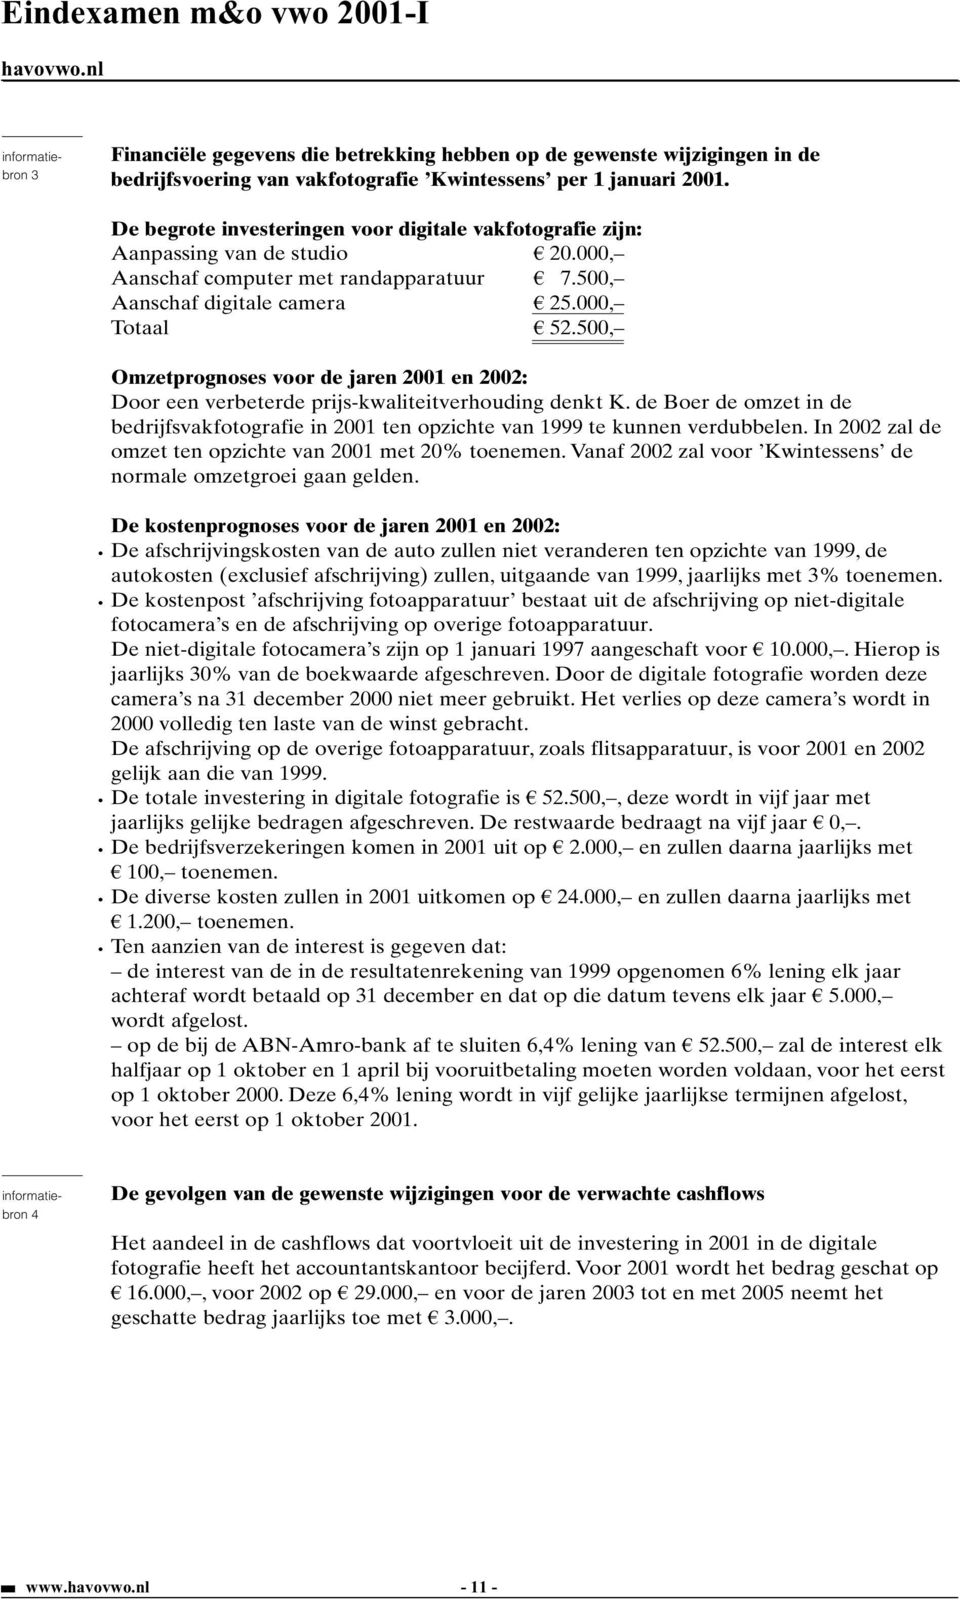 500, Omzetprognoses voor de jaren 2001 en 2002: Door een verbeterde prijs-kwaliteitverhouding denkt K. de Boer de omzet in de bedrijfsvakfotografie in 2001 ten opzichte van 1999 te kunnen verdubbelen.